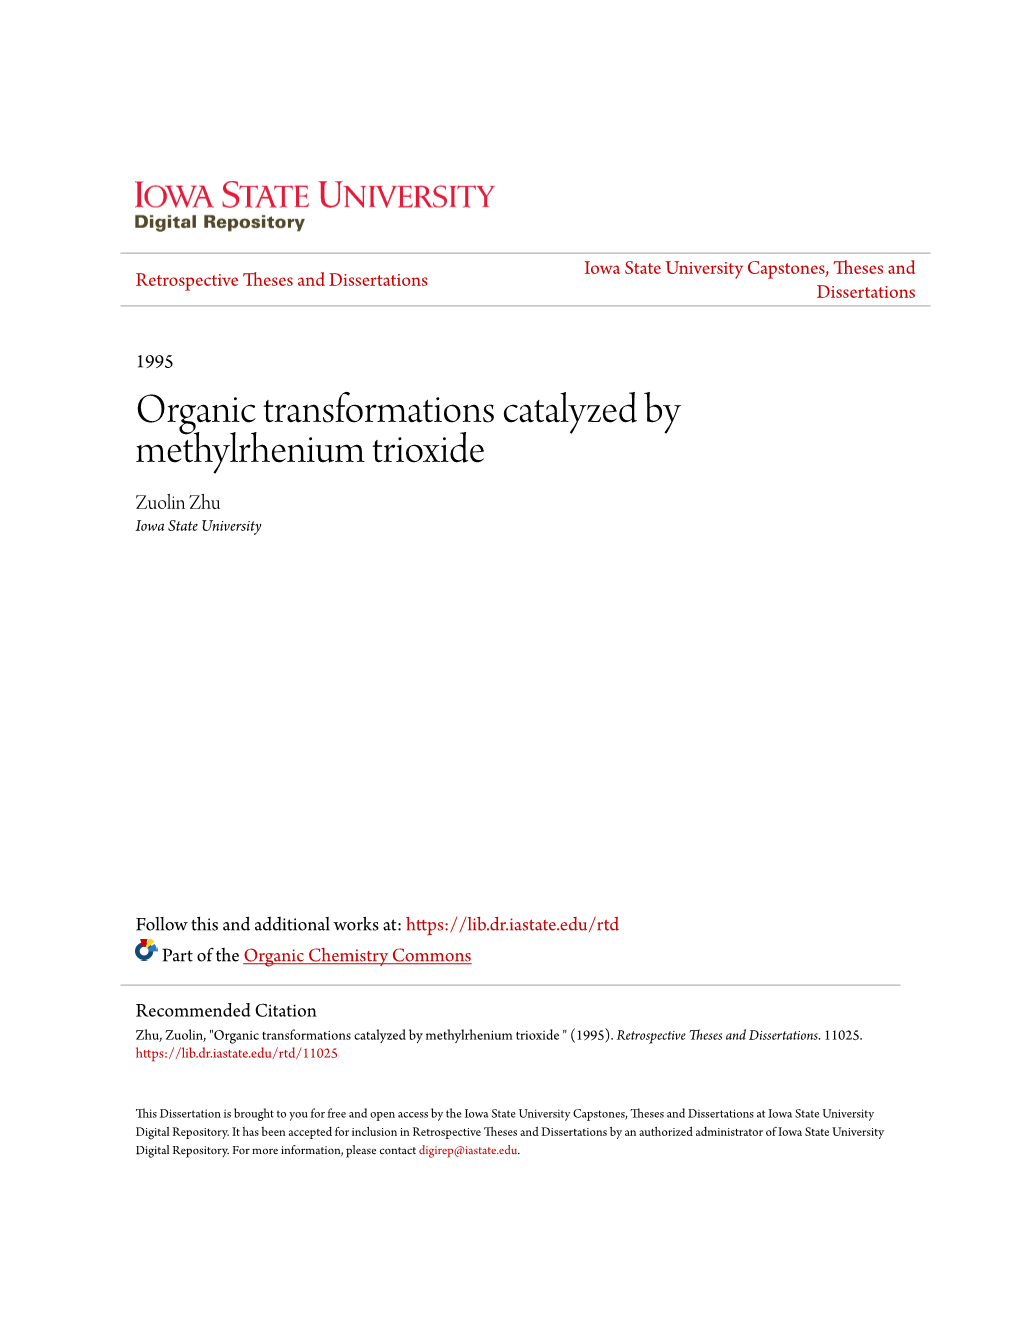 Organic Transformations Catalyzed by Methylrhenium Trioxide Zuolin Zhu Iowa State University